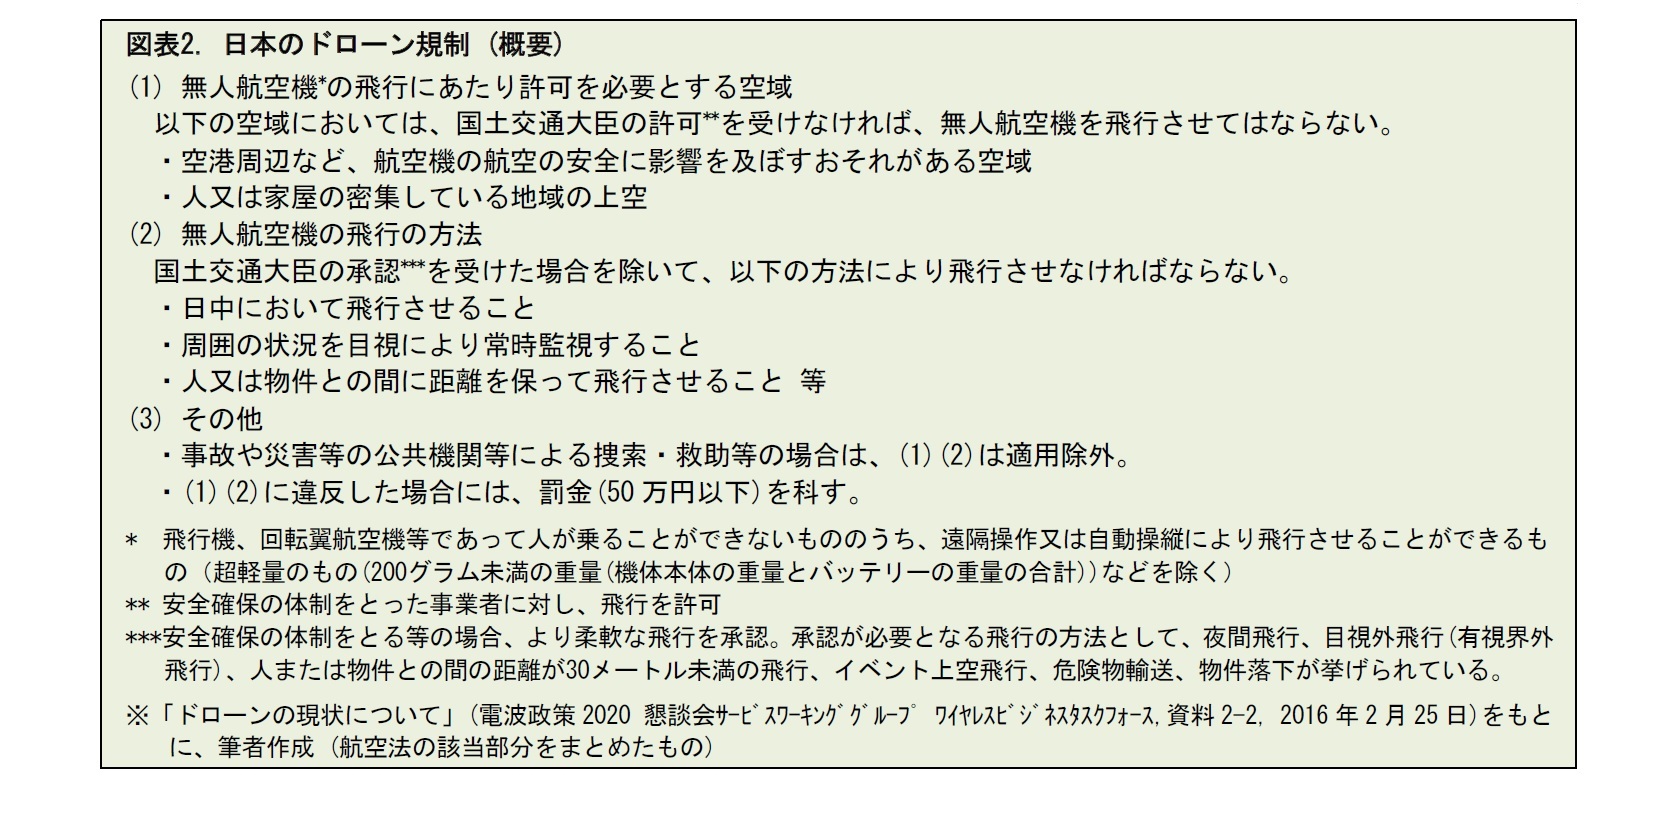 図表2. 日本のドローン規制 (概要)